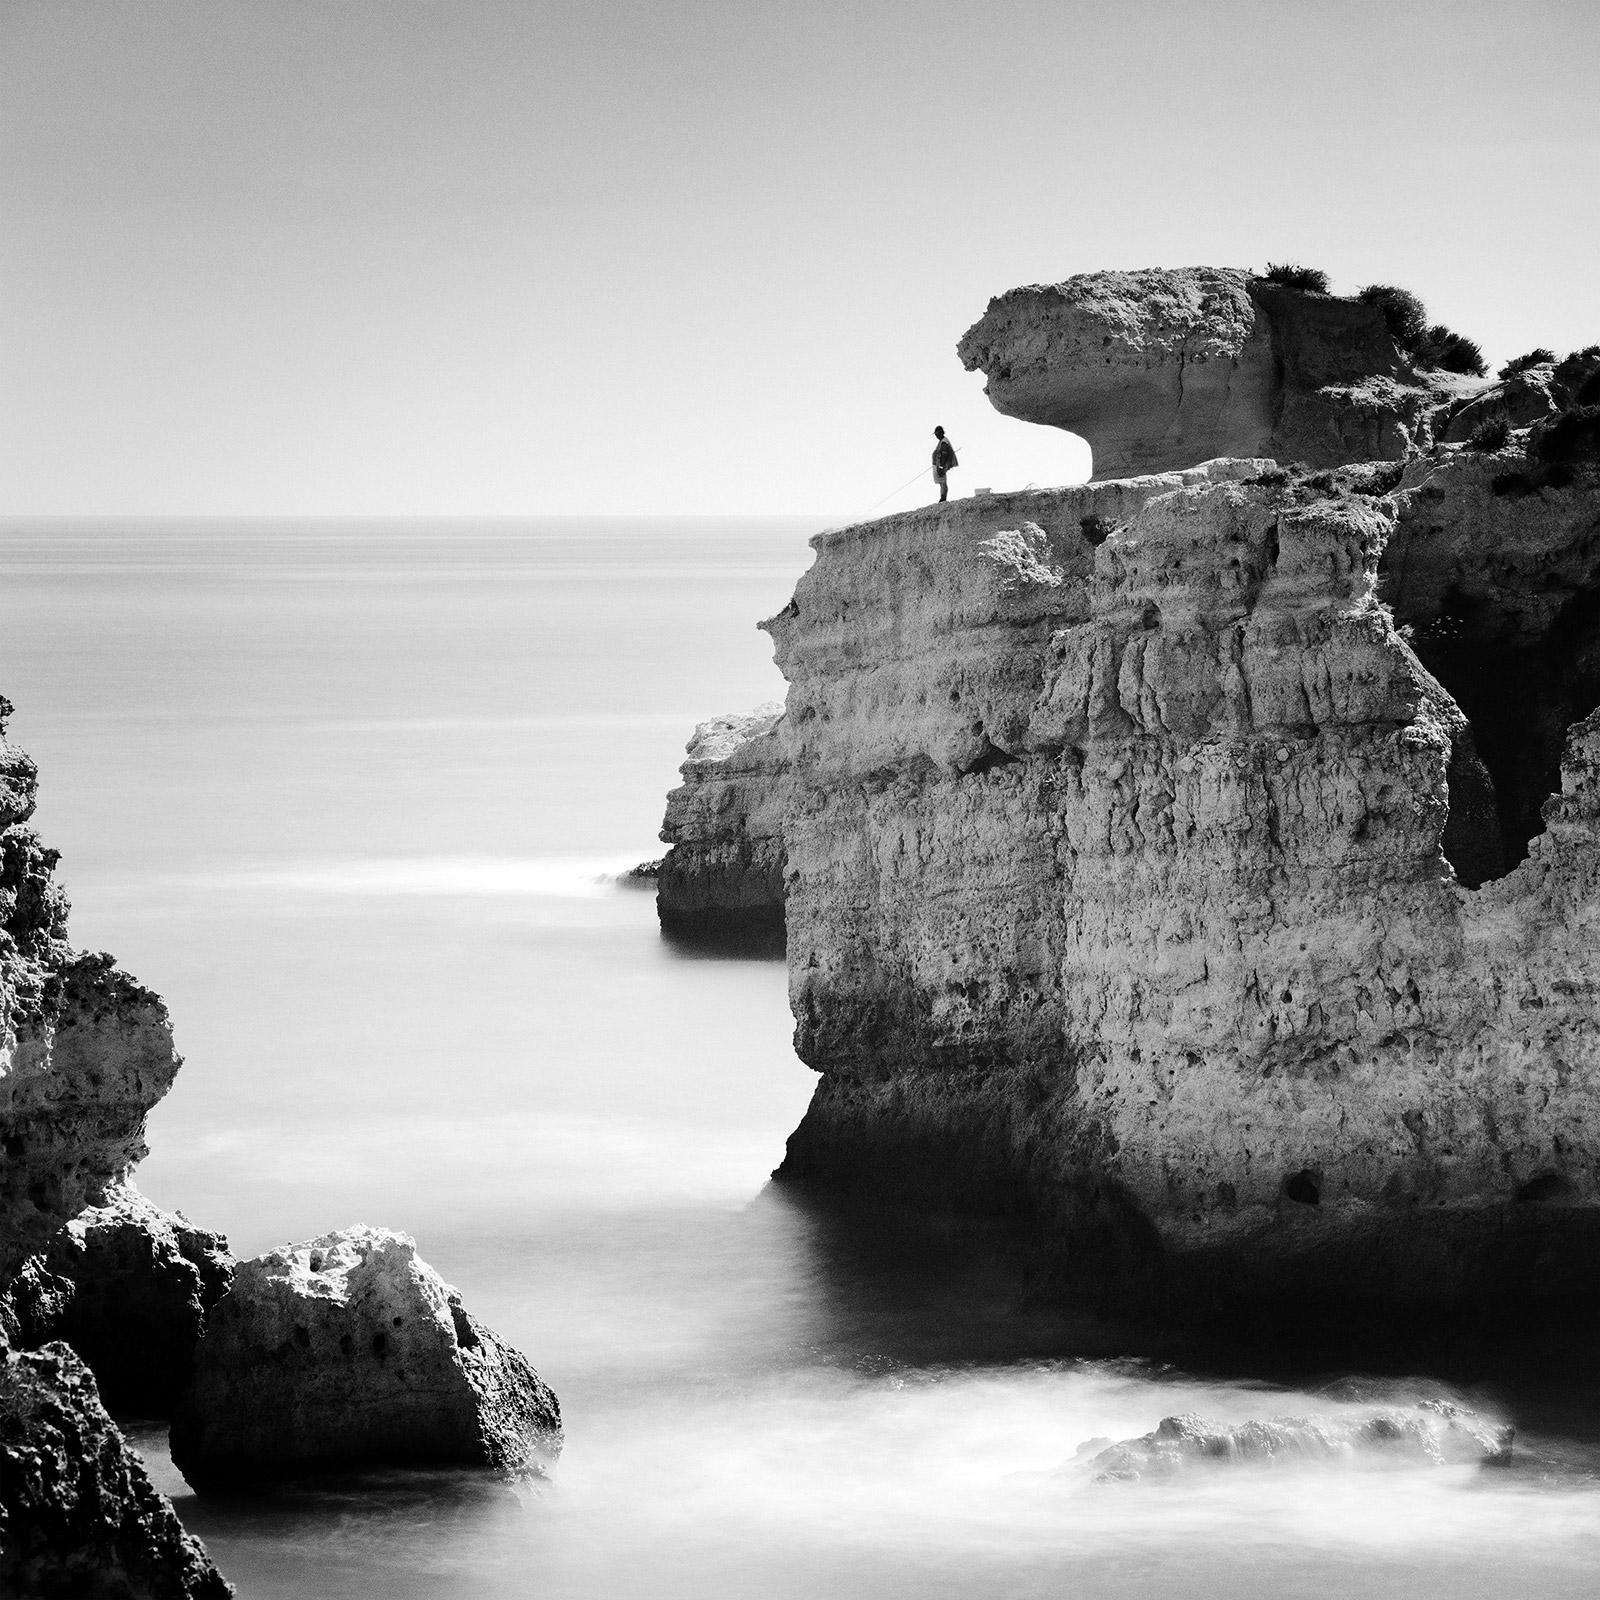 Landscape Photograph Gerald Berghammer - Pêche dans les rochers, rivage, falaises, Portugal, photographie de paysage en noir et blanc